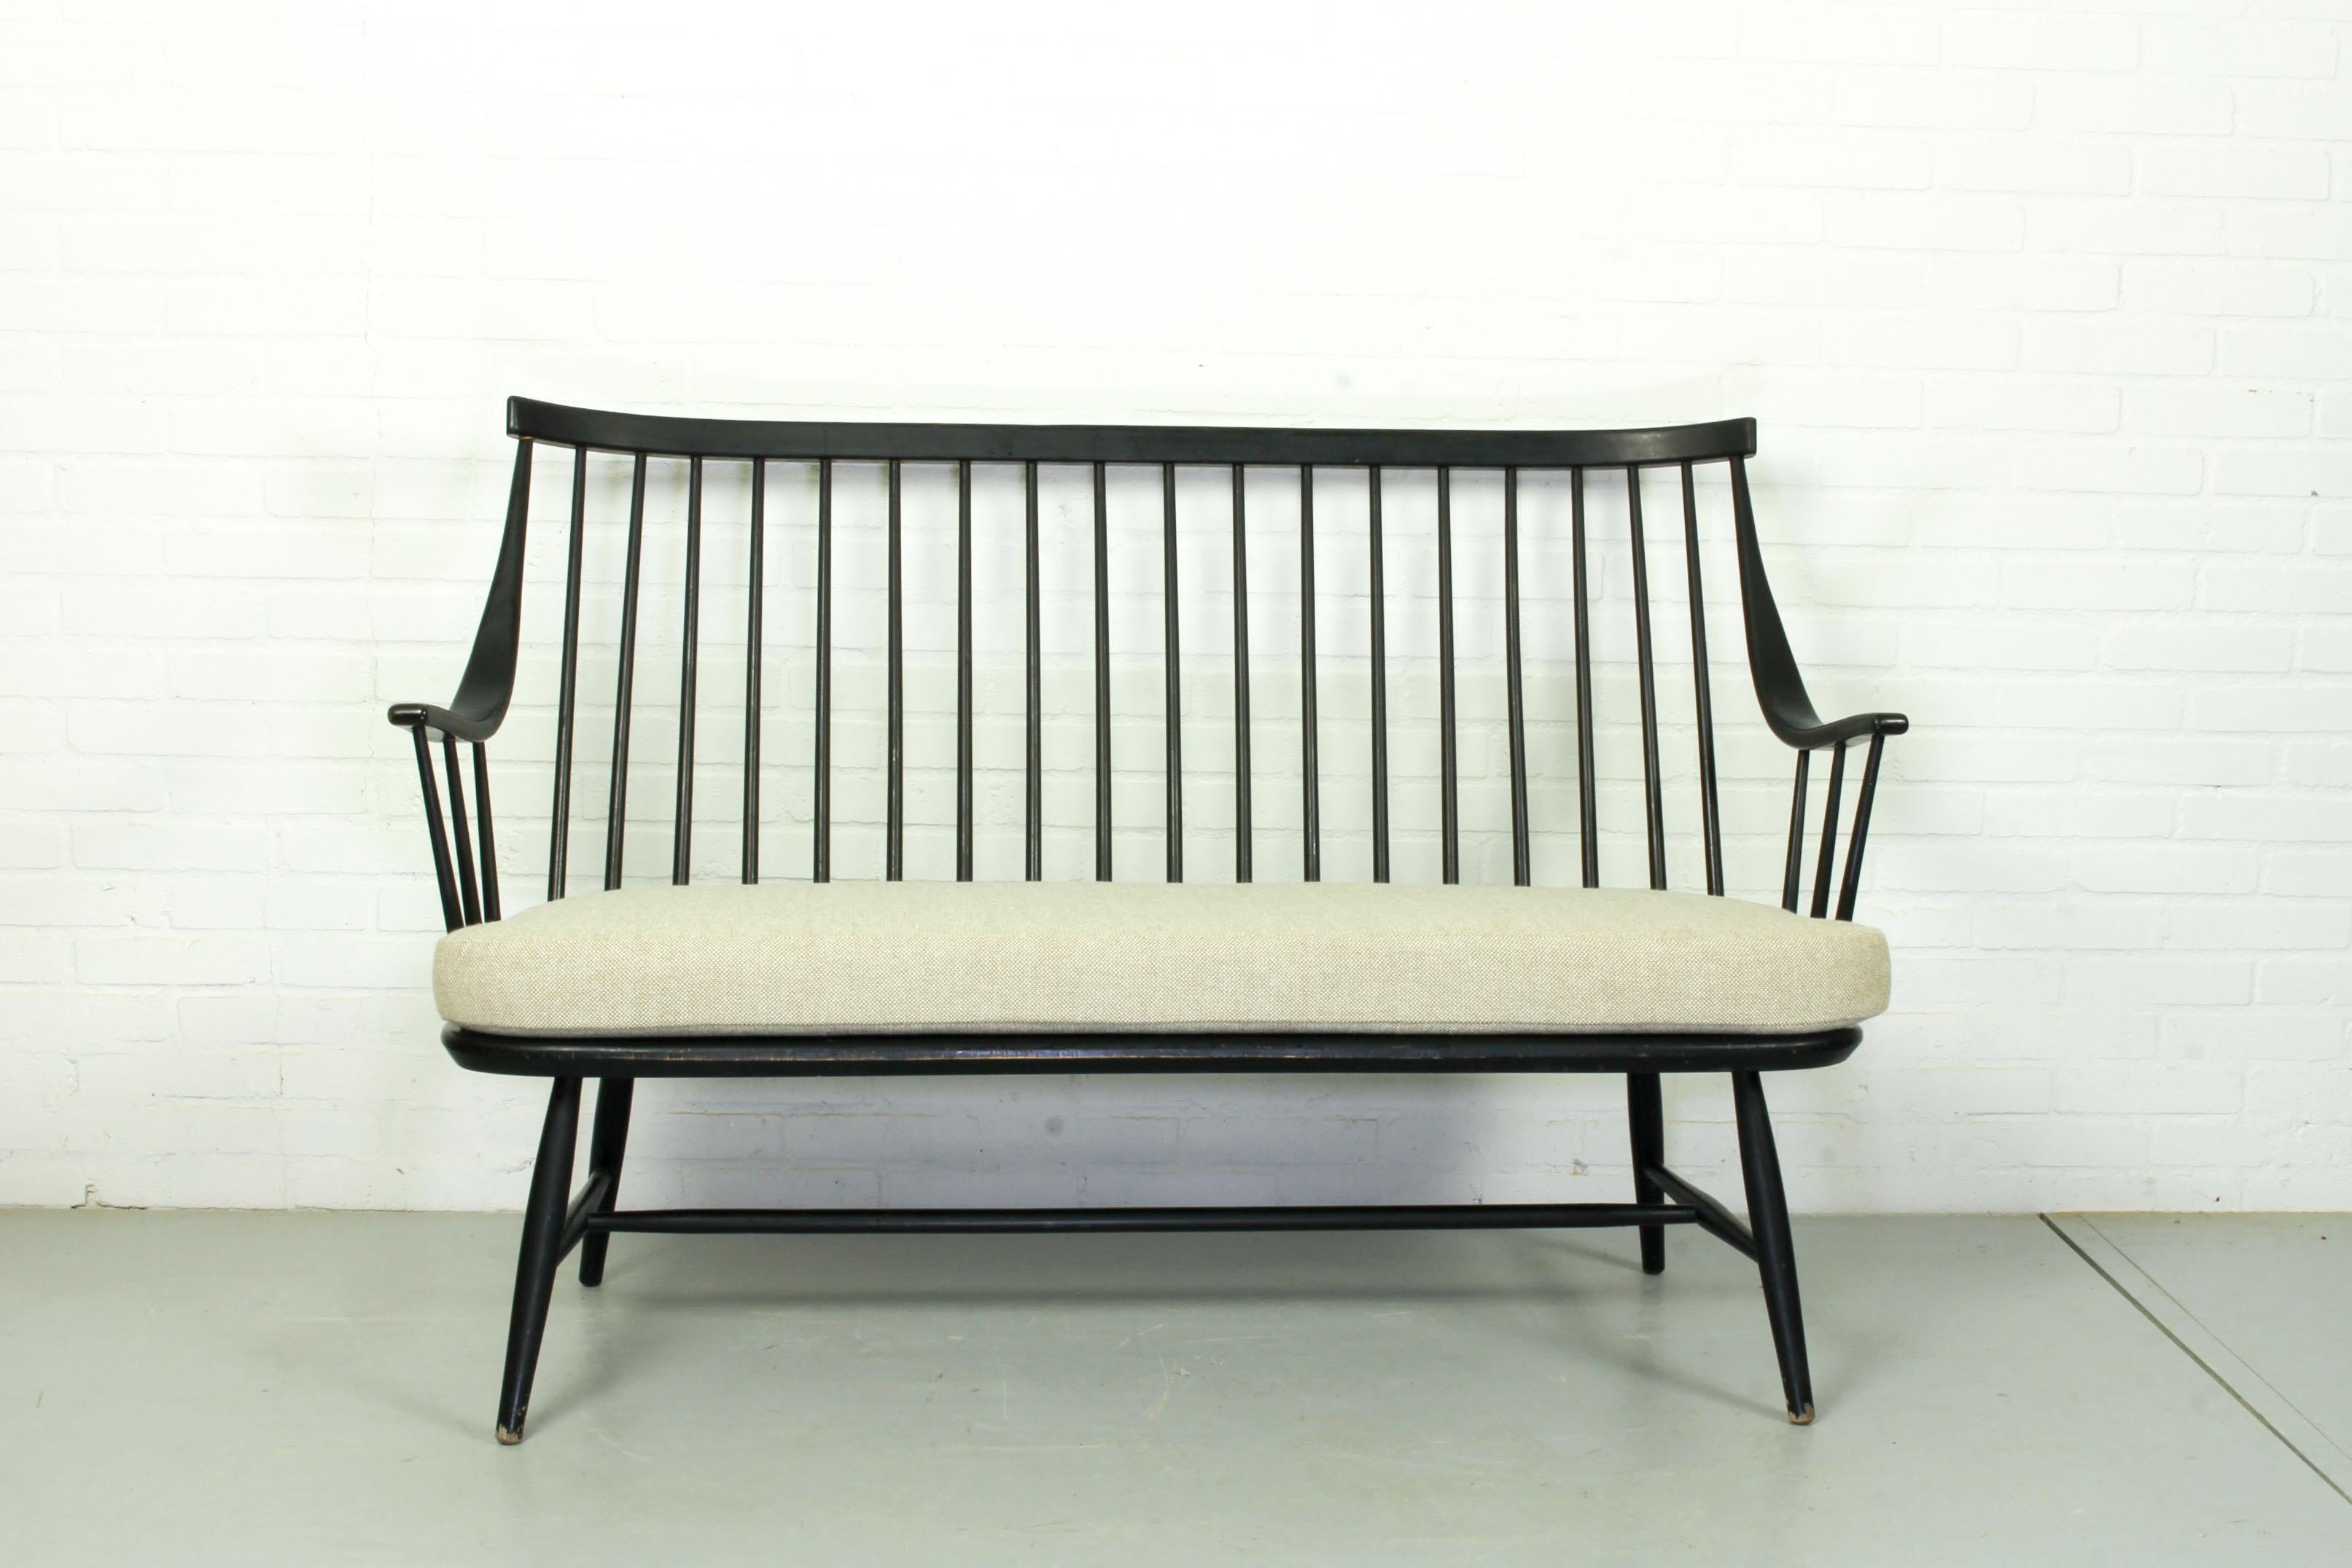 Deux grands fauteuils et un banc assorti, modèle ''Grandessa'', design Lena Larsson, fin des années 1950. Revêtement beige Kvadrat Hallingdal avec un nouveau rembourrage en mousse. Le prix est celui de l'ensemble. Sans défaut. Avec une charmante